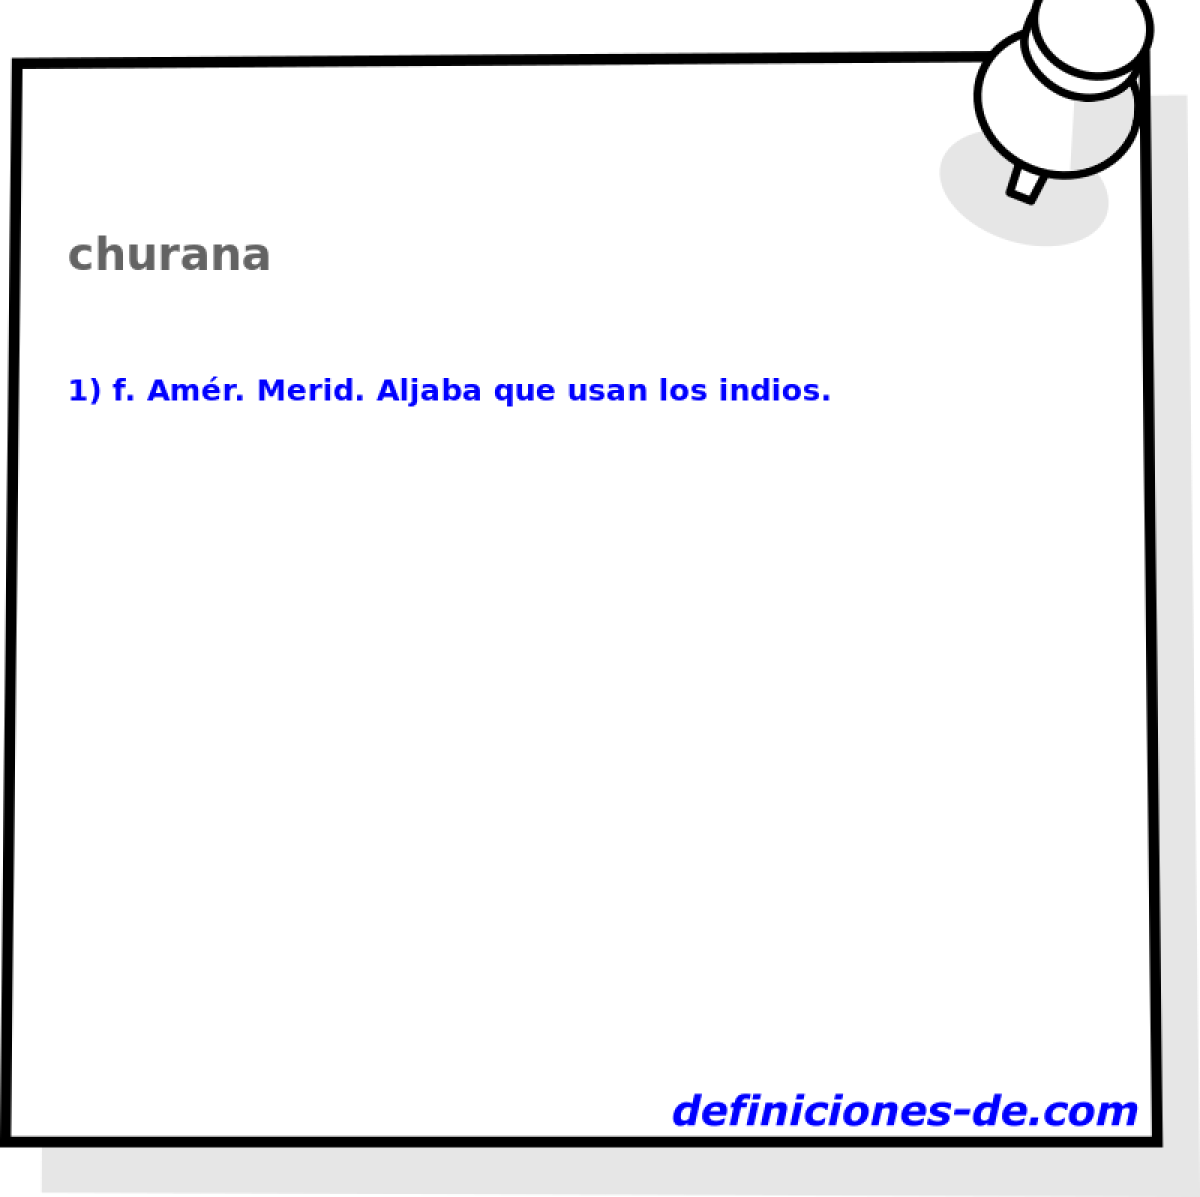 churana 